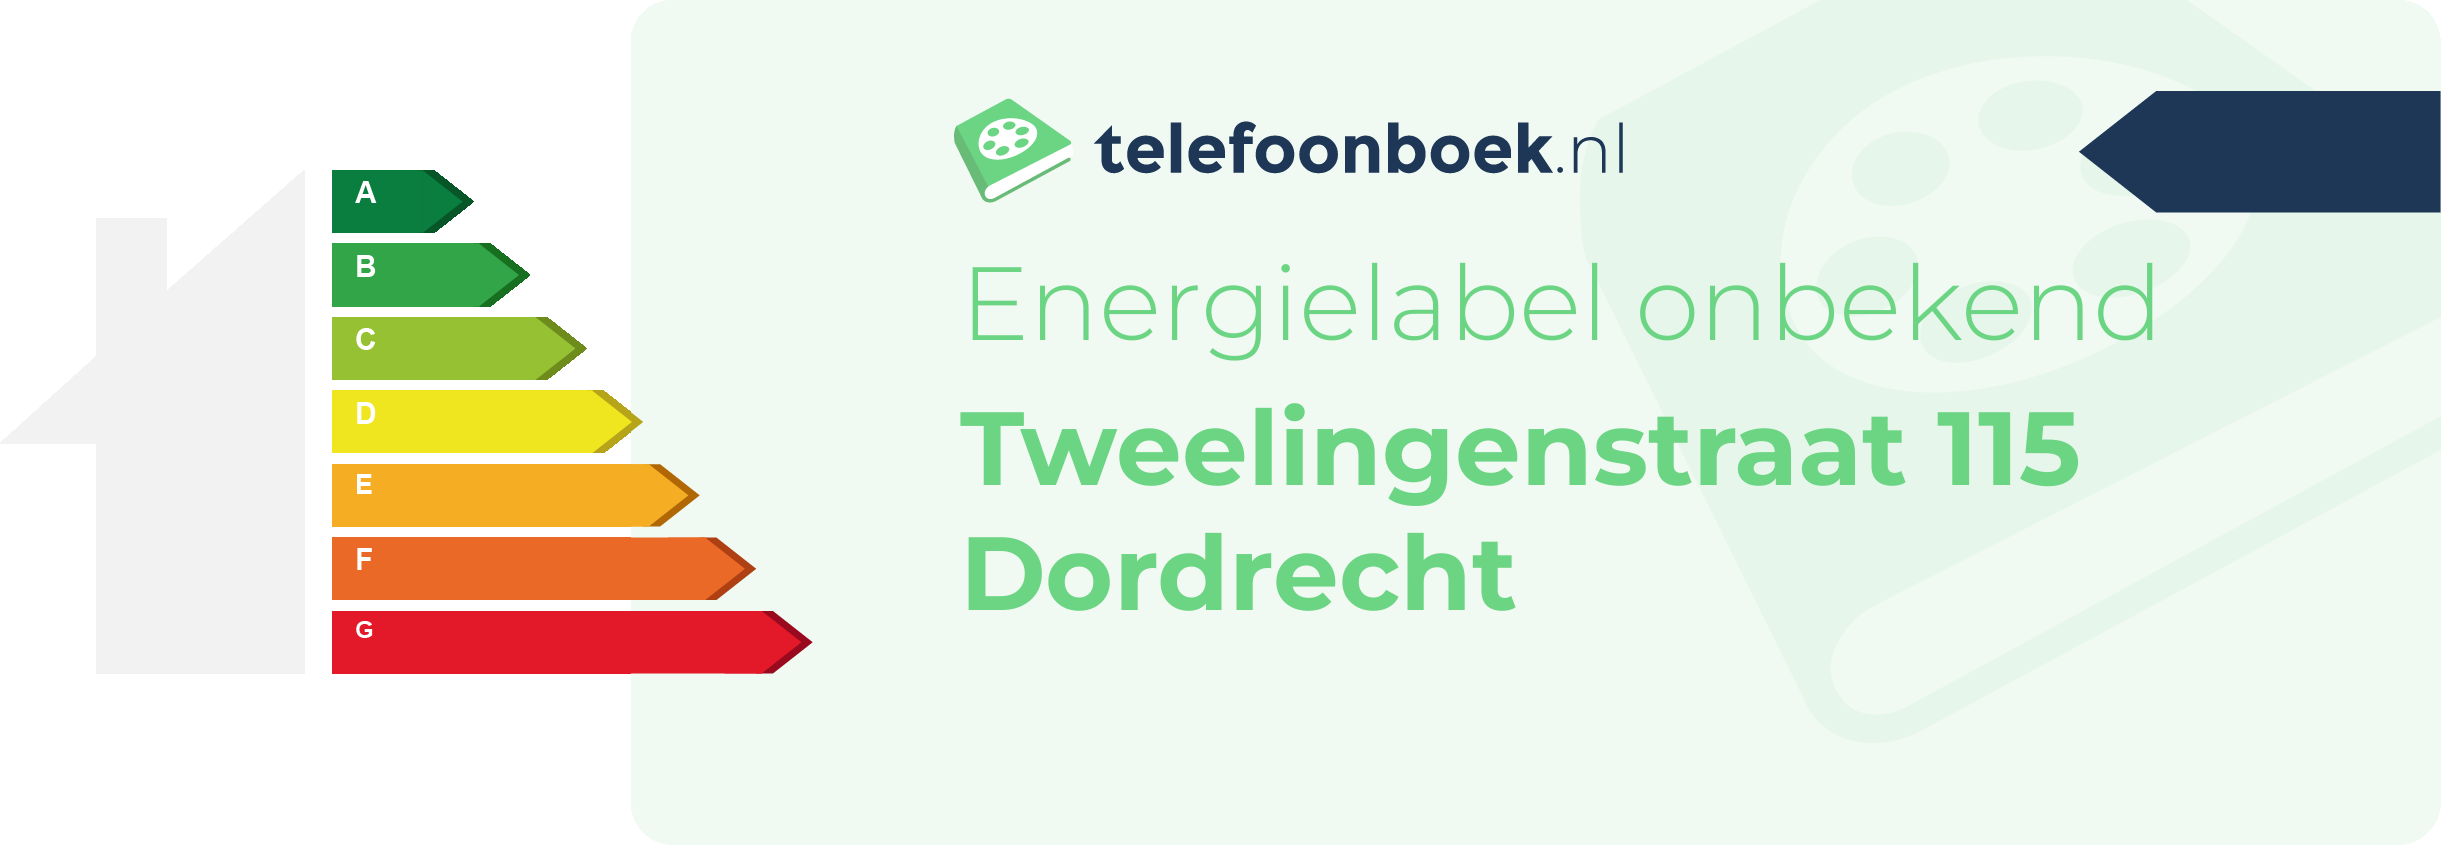 Energielabel Tweelingenstraat 115 Dordrecht